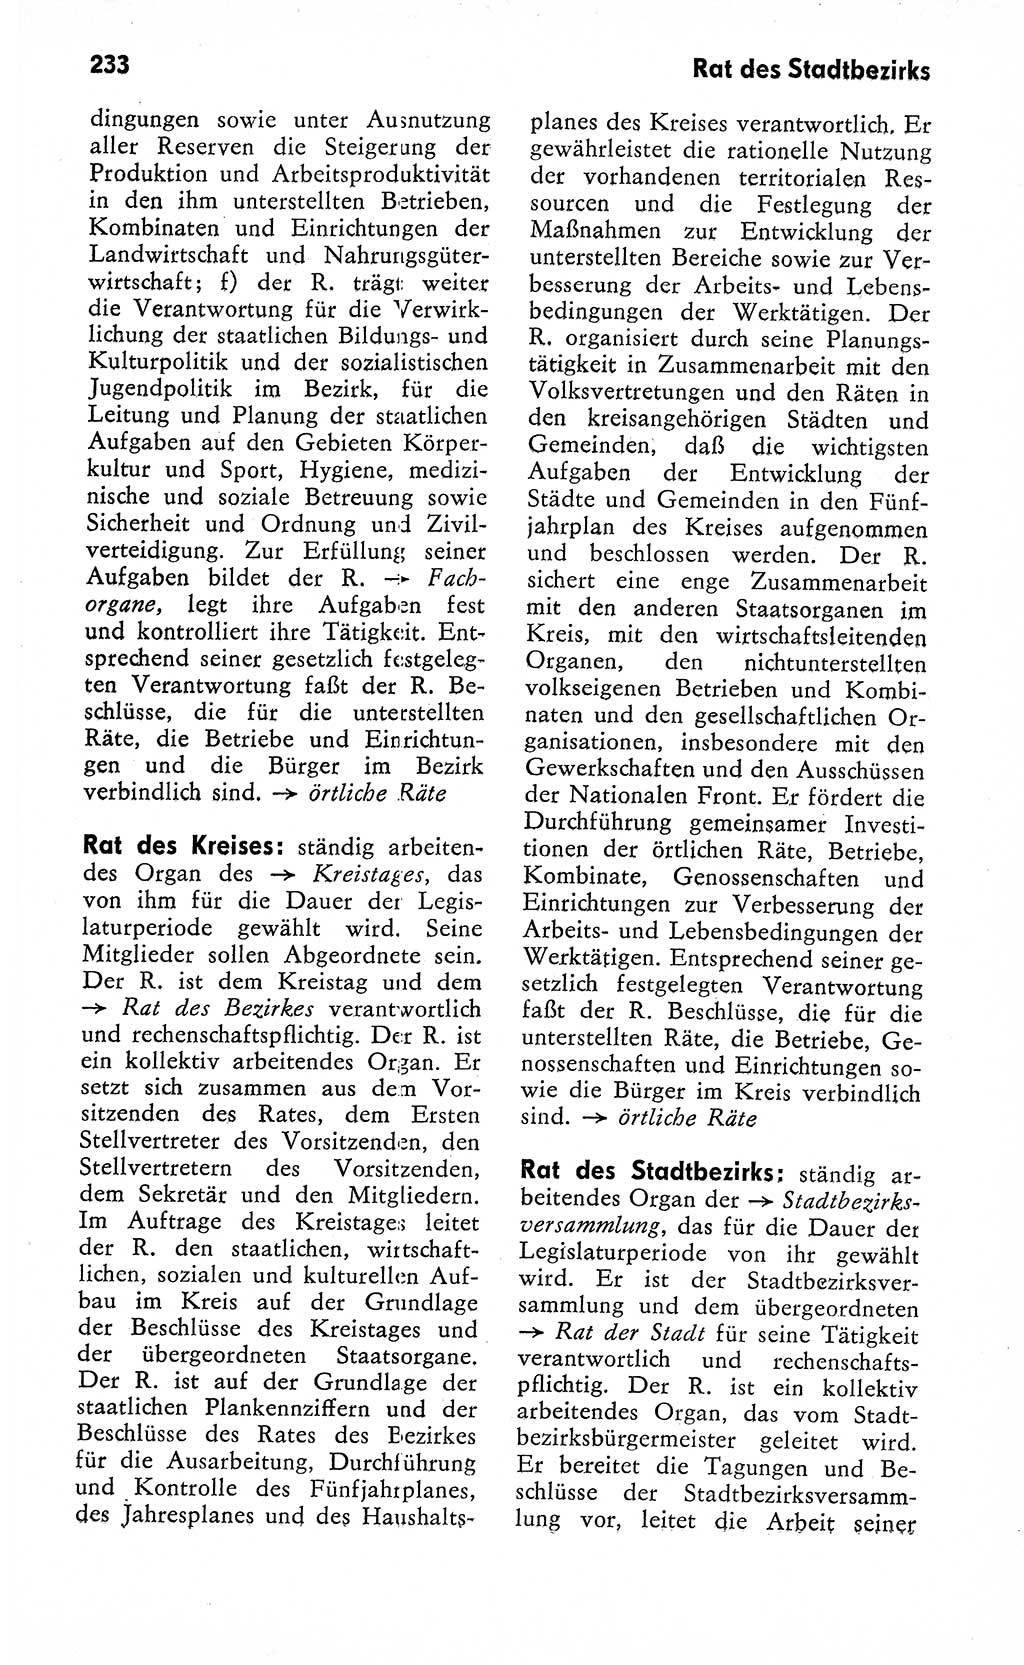 Wörterbuch zum sozialistischen Staat [Deutsche Demokratische Republik (DDR)] 1974, Seite 233 (Wb. soz. St. DDR 1974, S. 233)